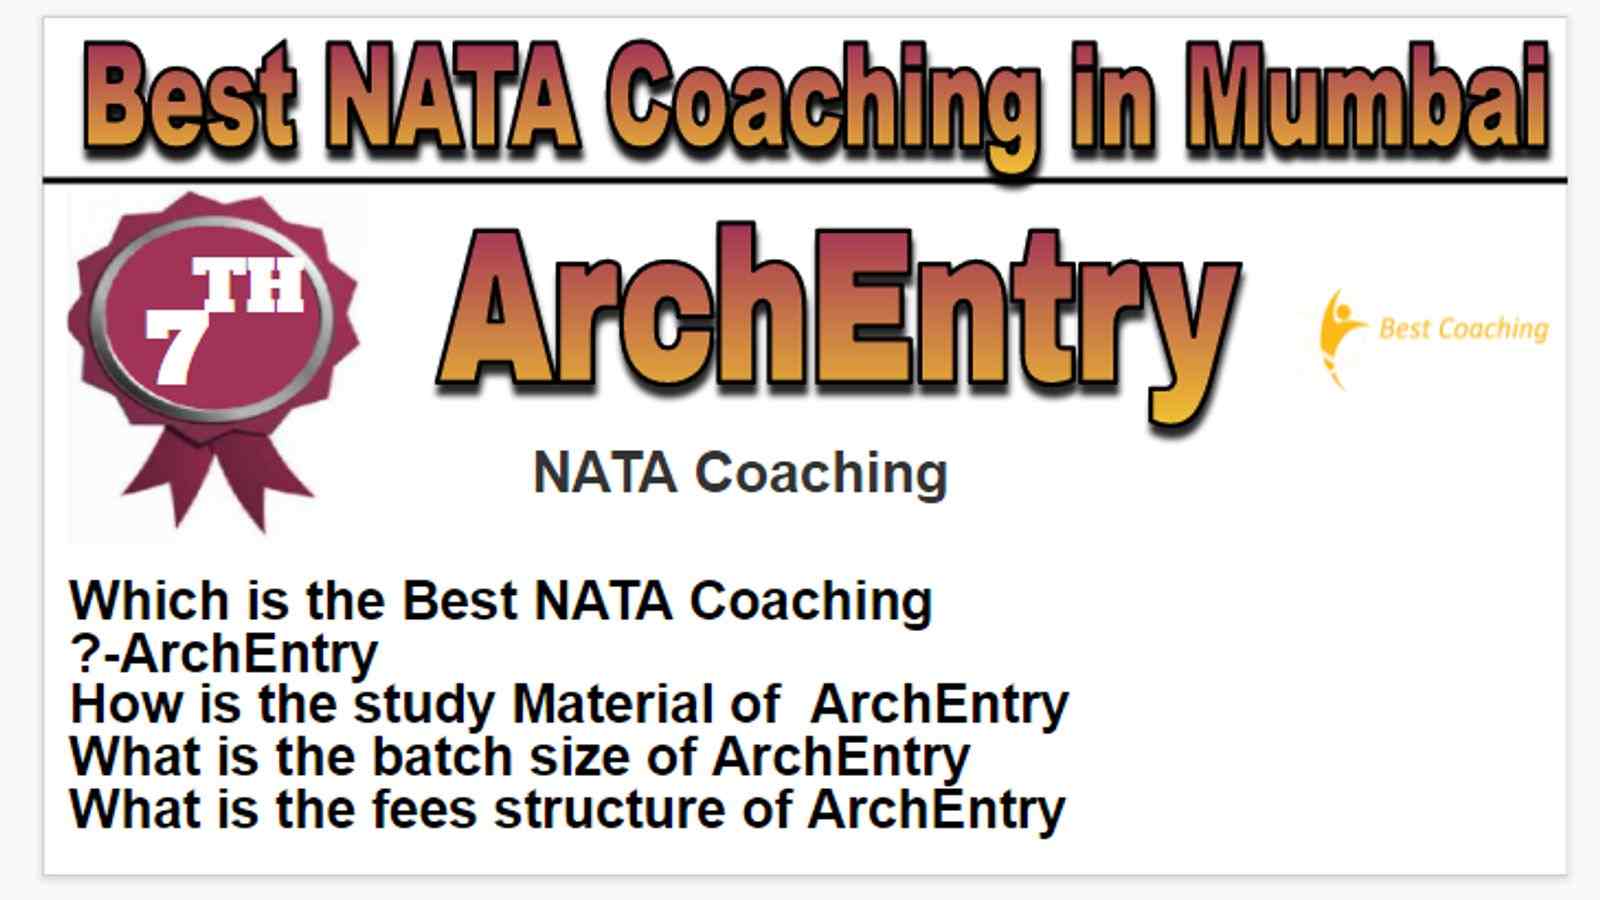 Rank 7 best NATA coaching in Mumbai